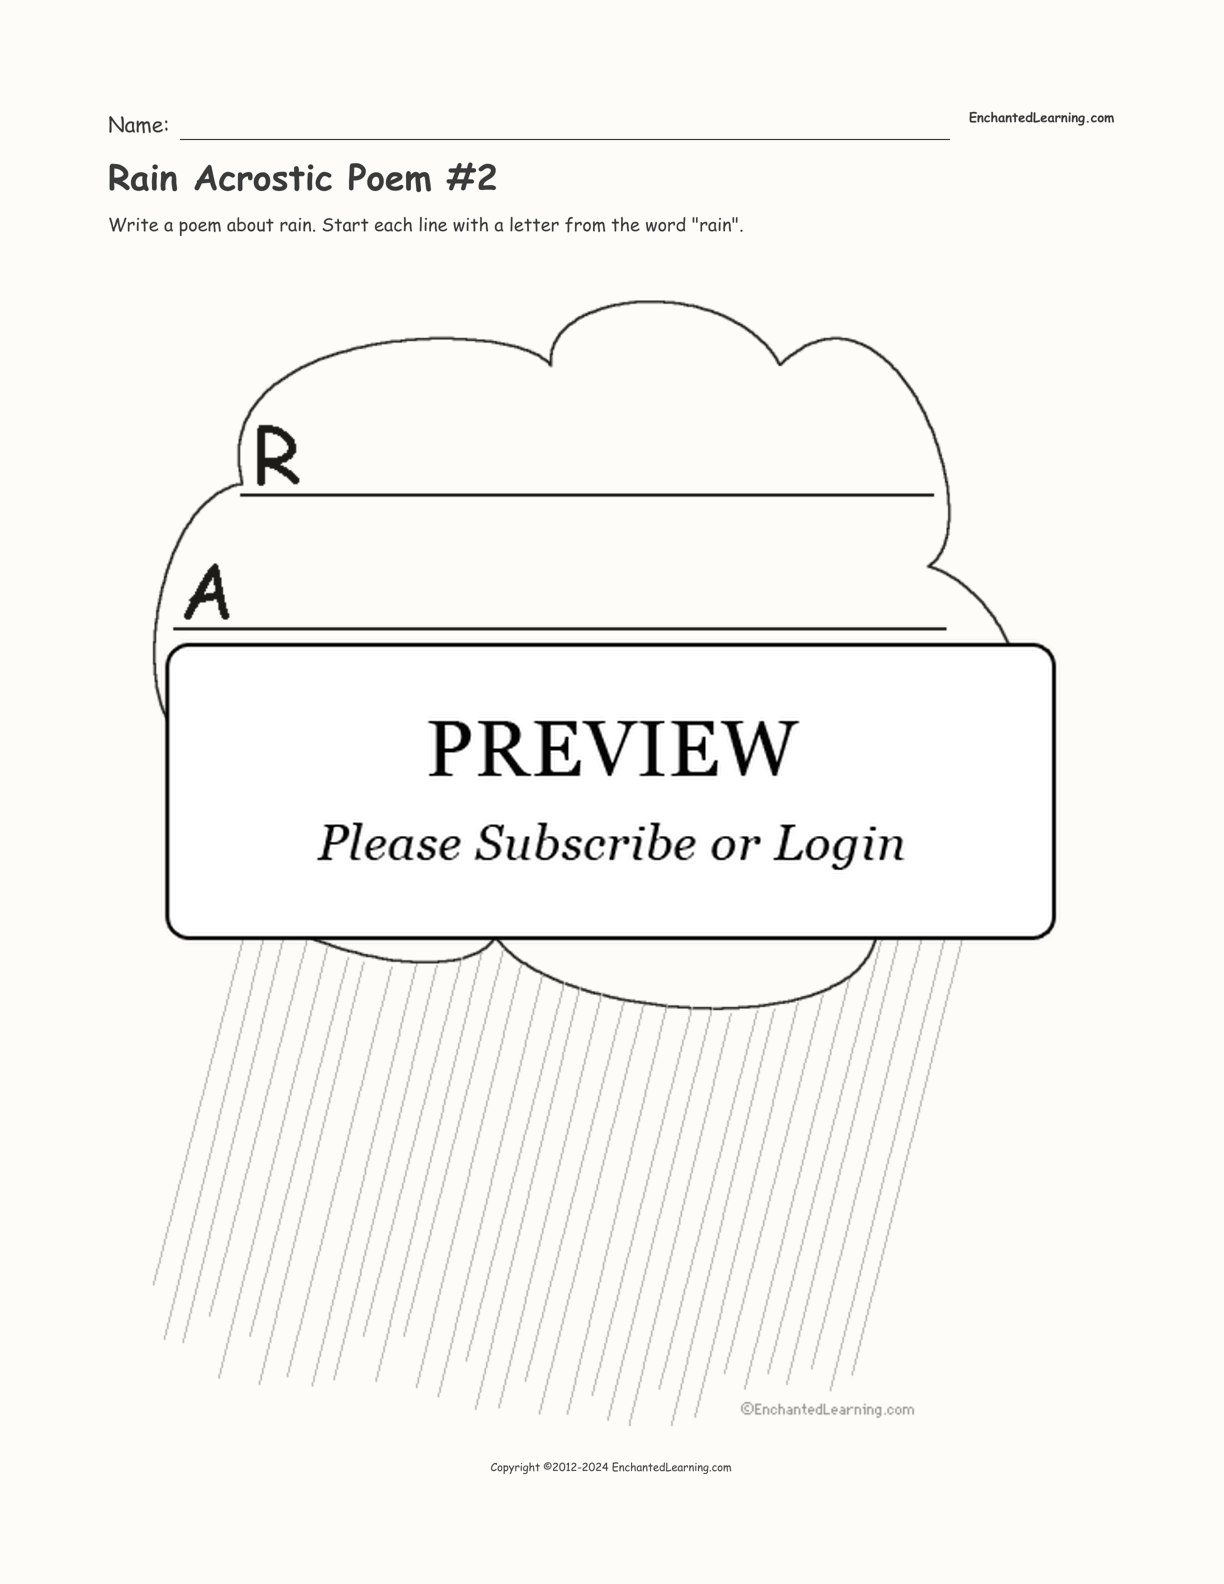 Rain Acrostic Poem #2 interactive worksheet page 1